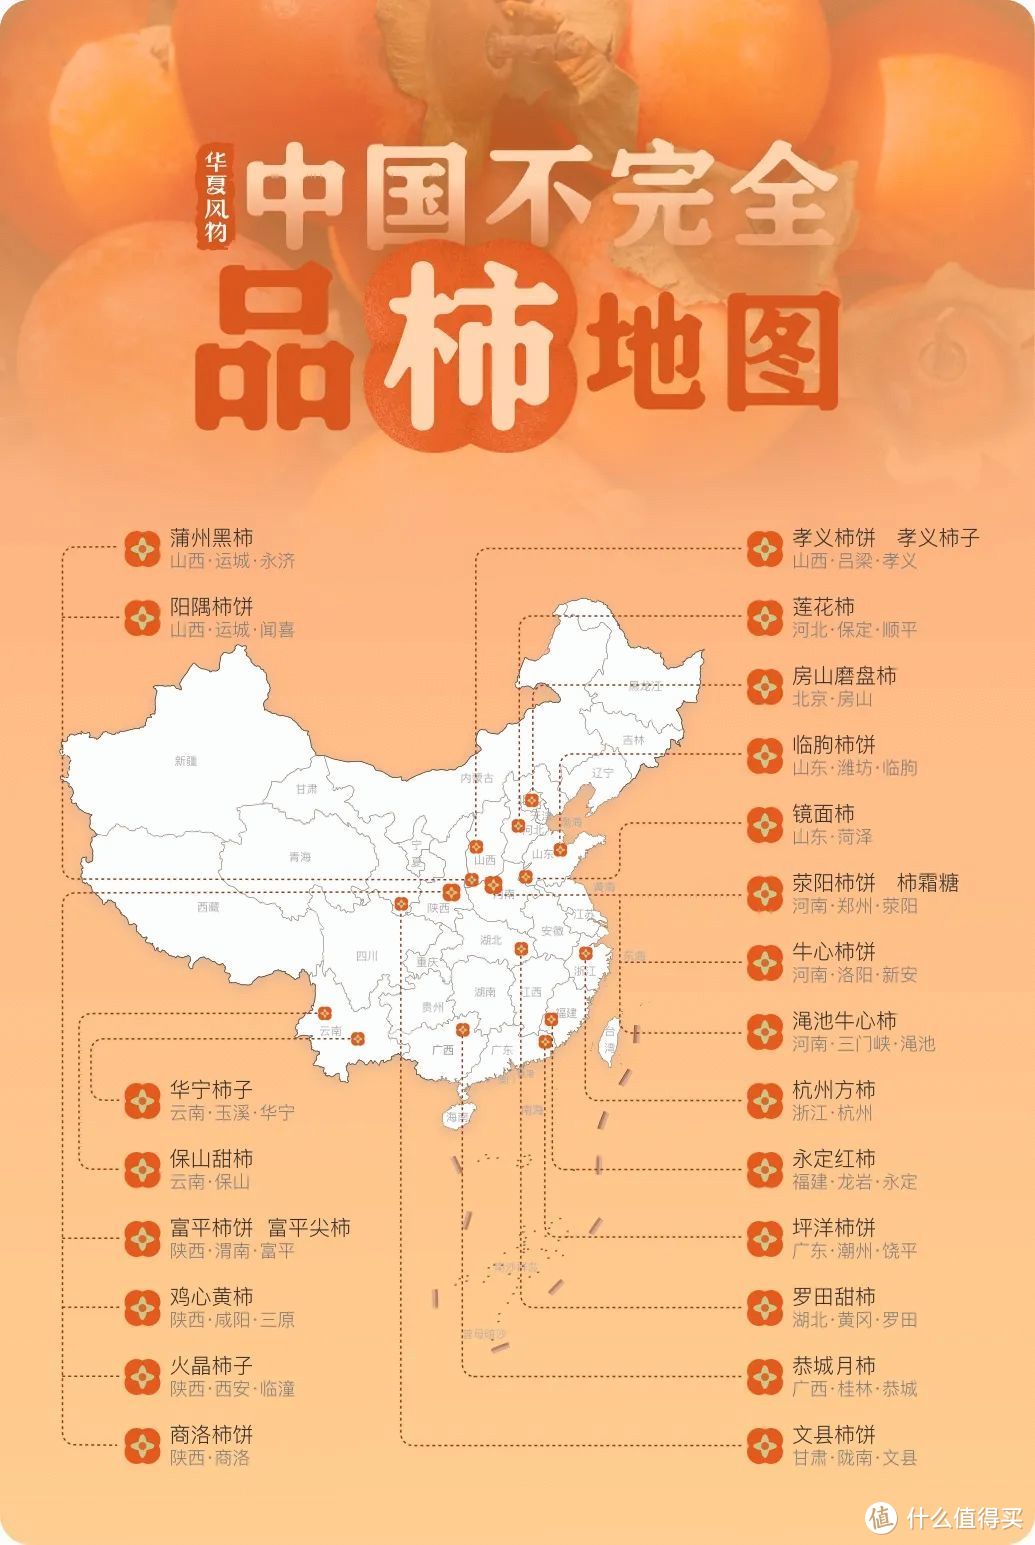 中国不完全品柿地图 ©华夏风物